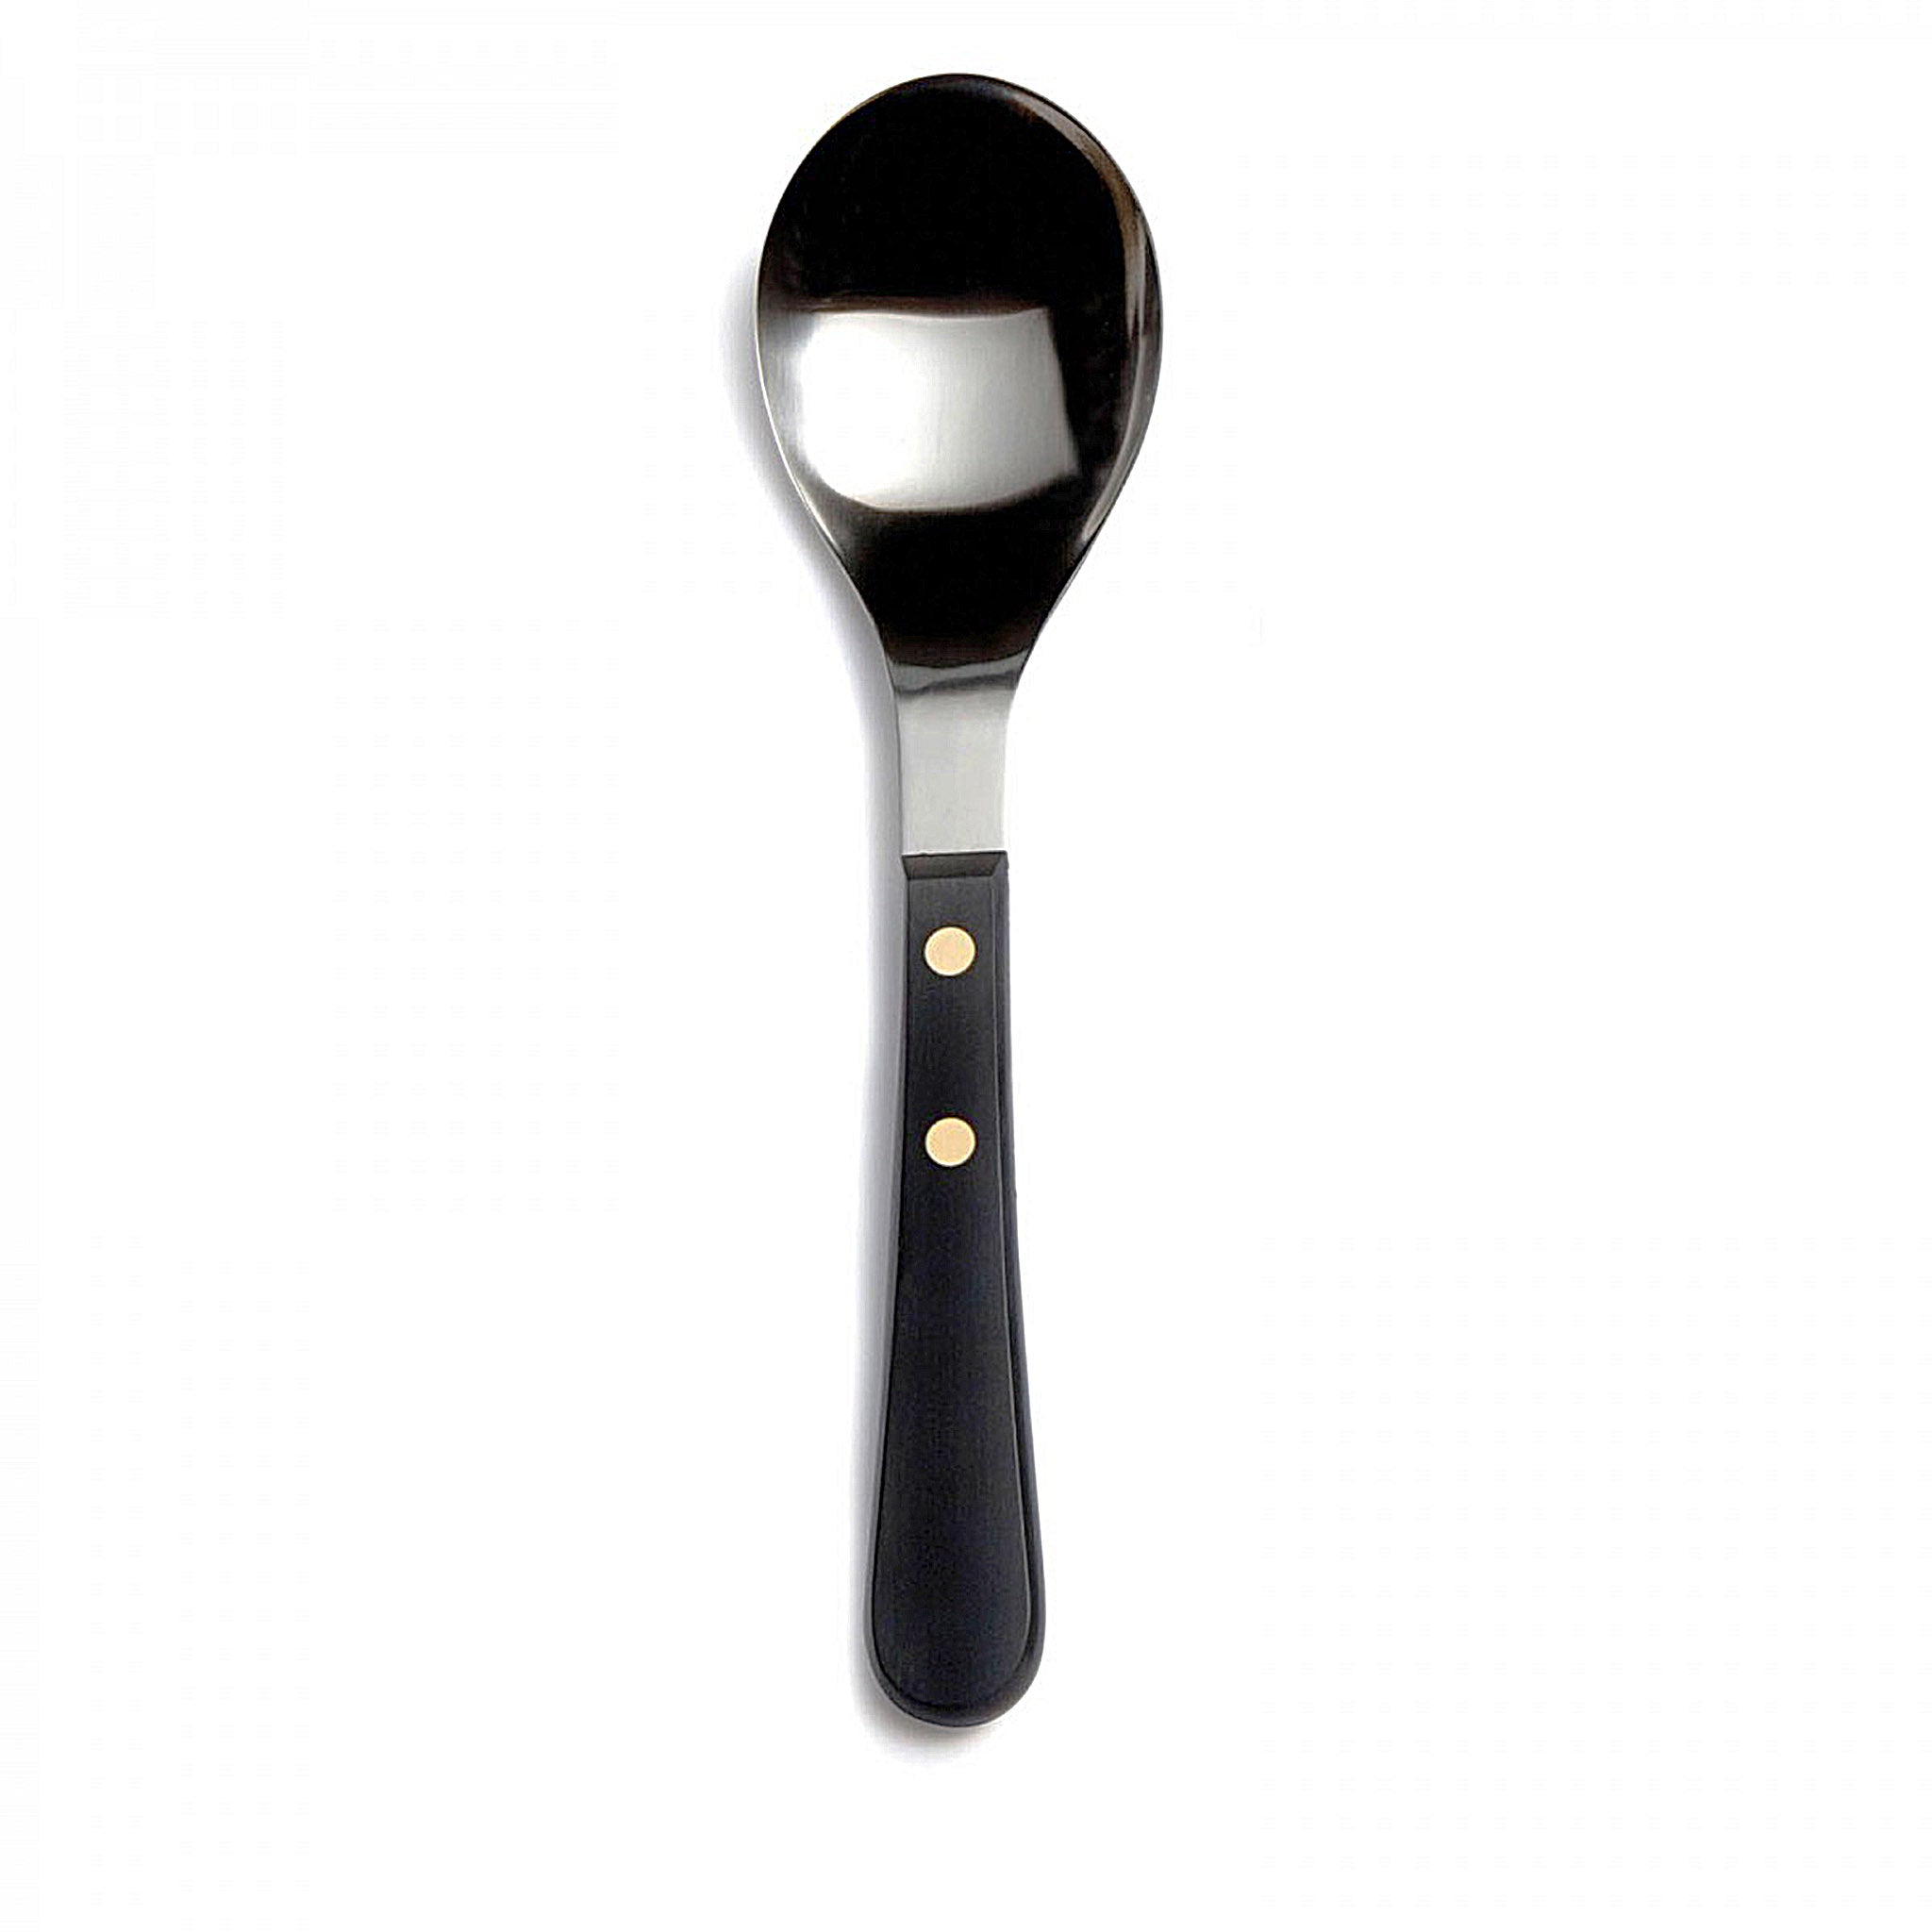 David Mellor Provencal Black serving spoon.